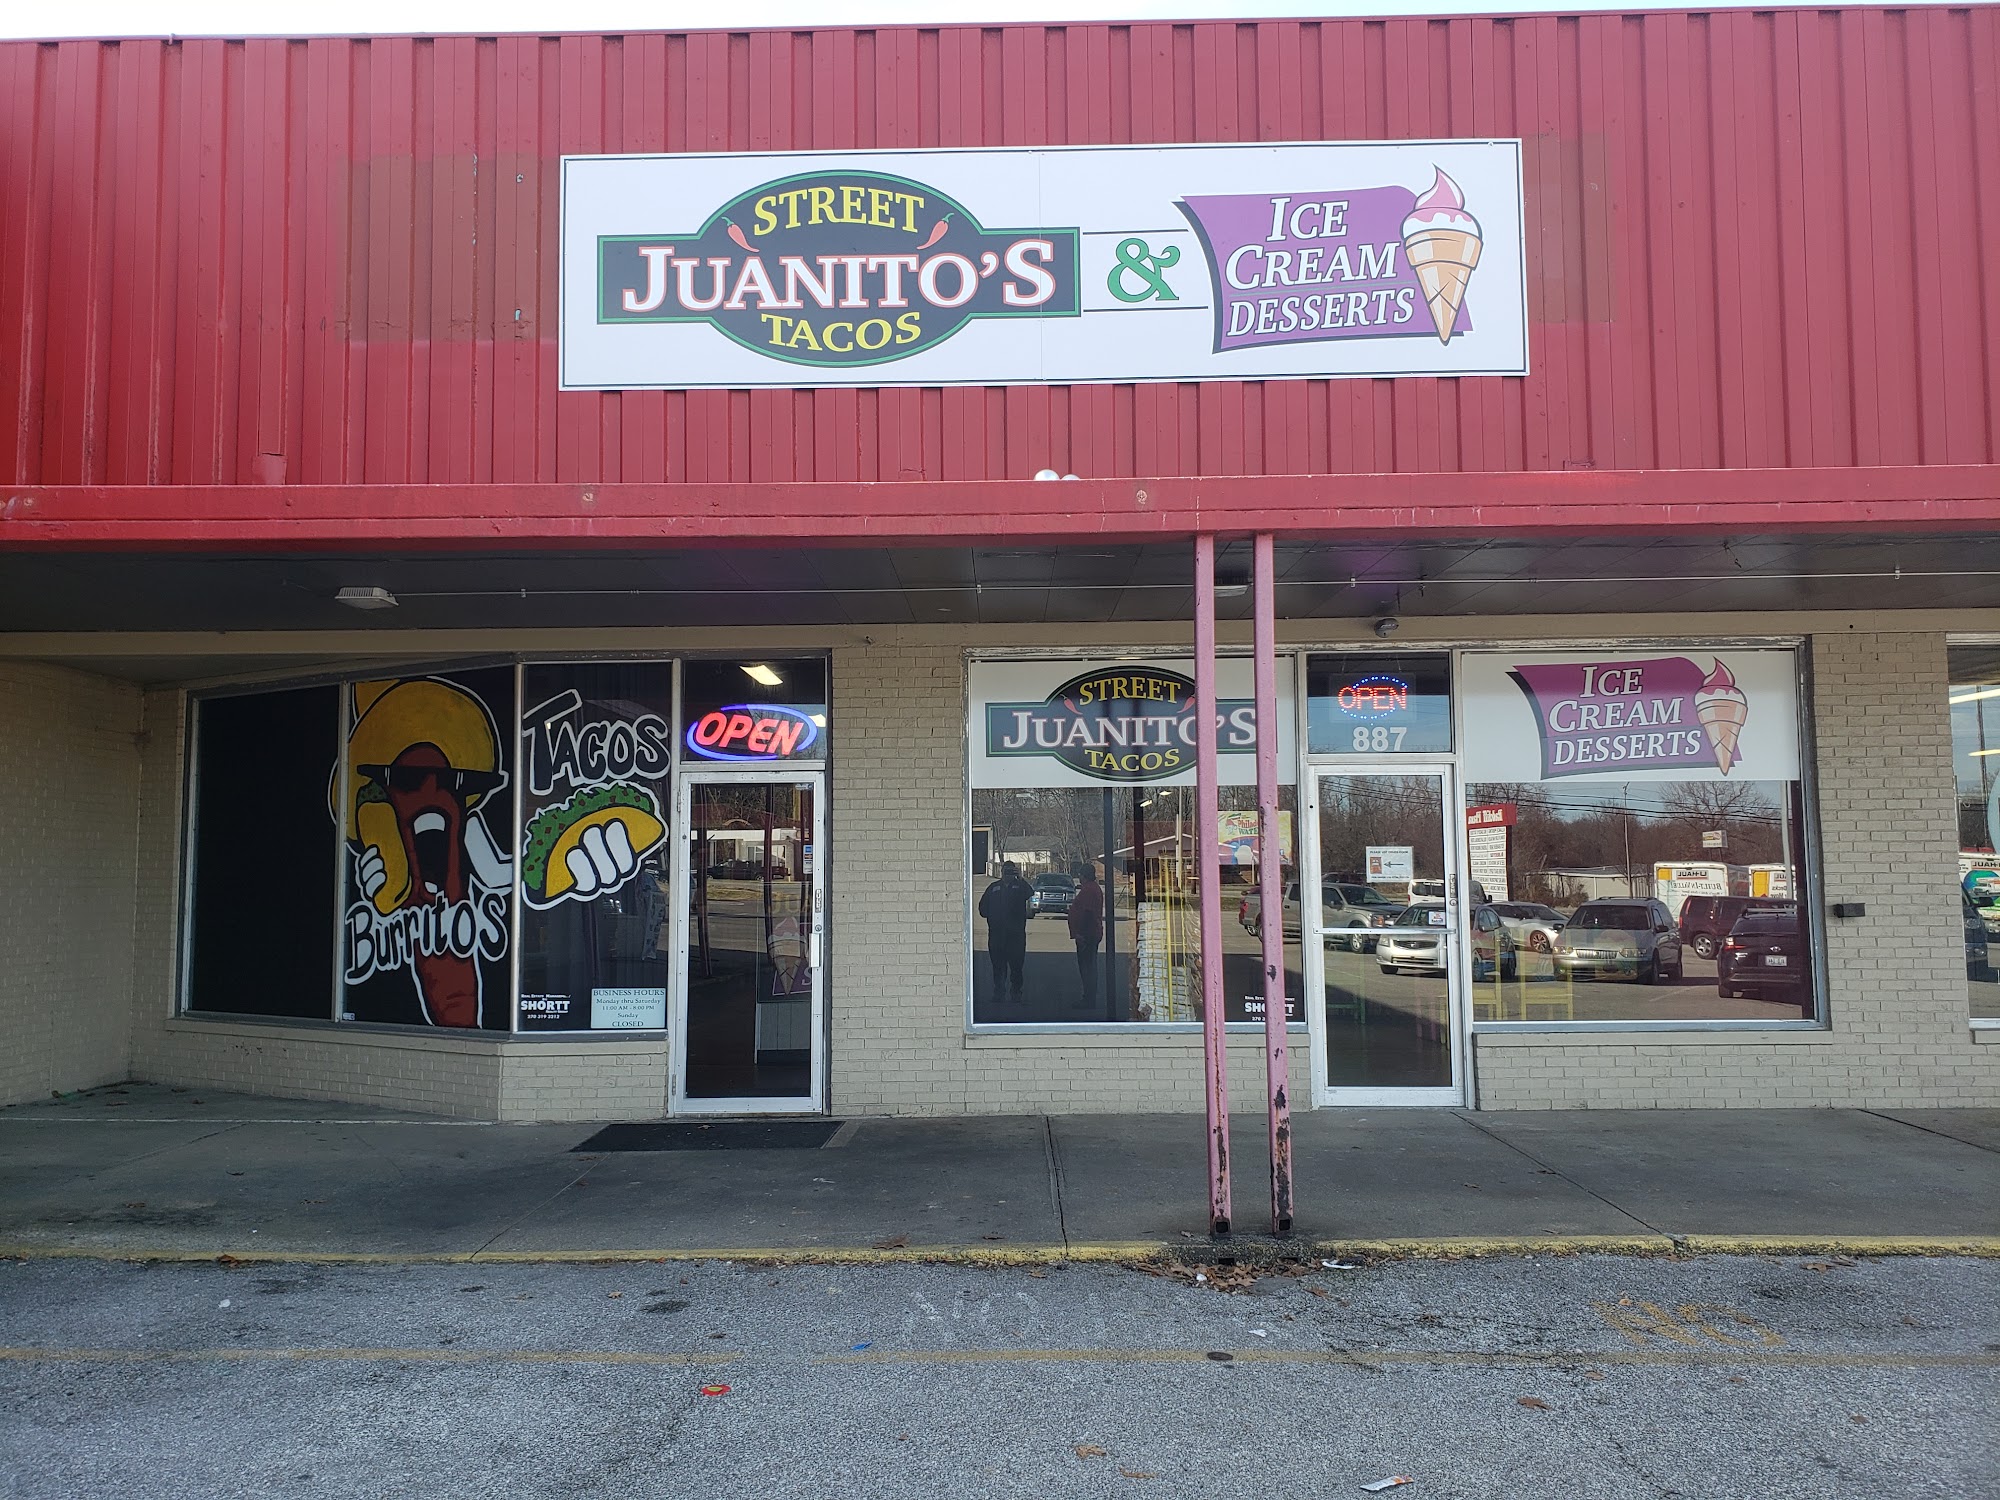 Juanito's Street Tacos